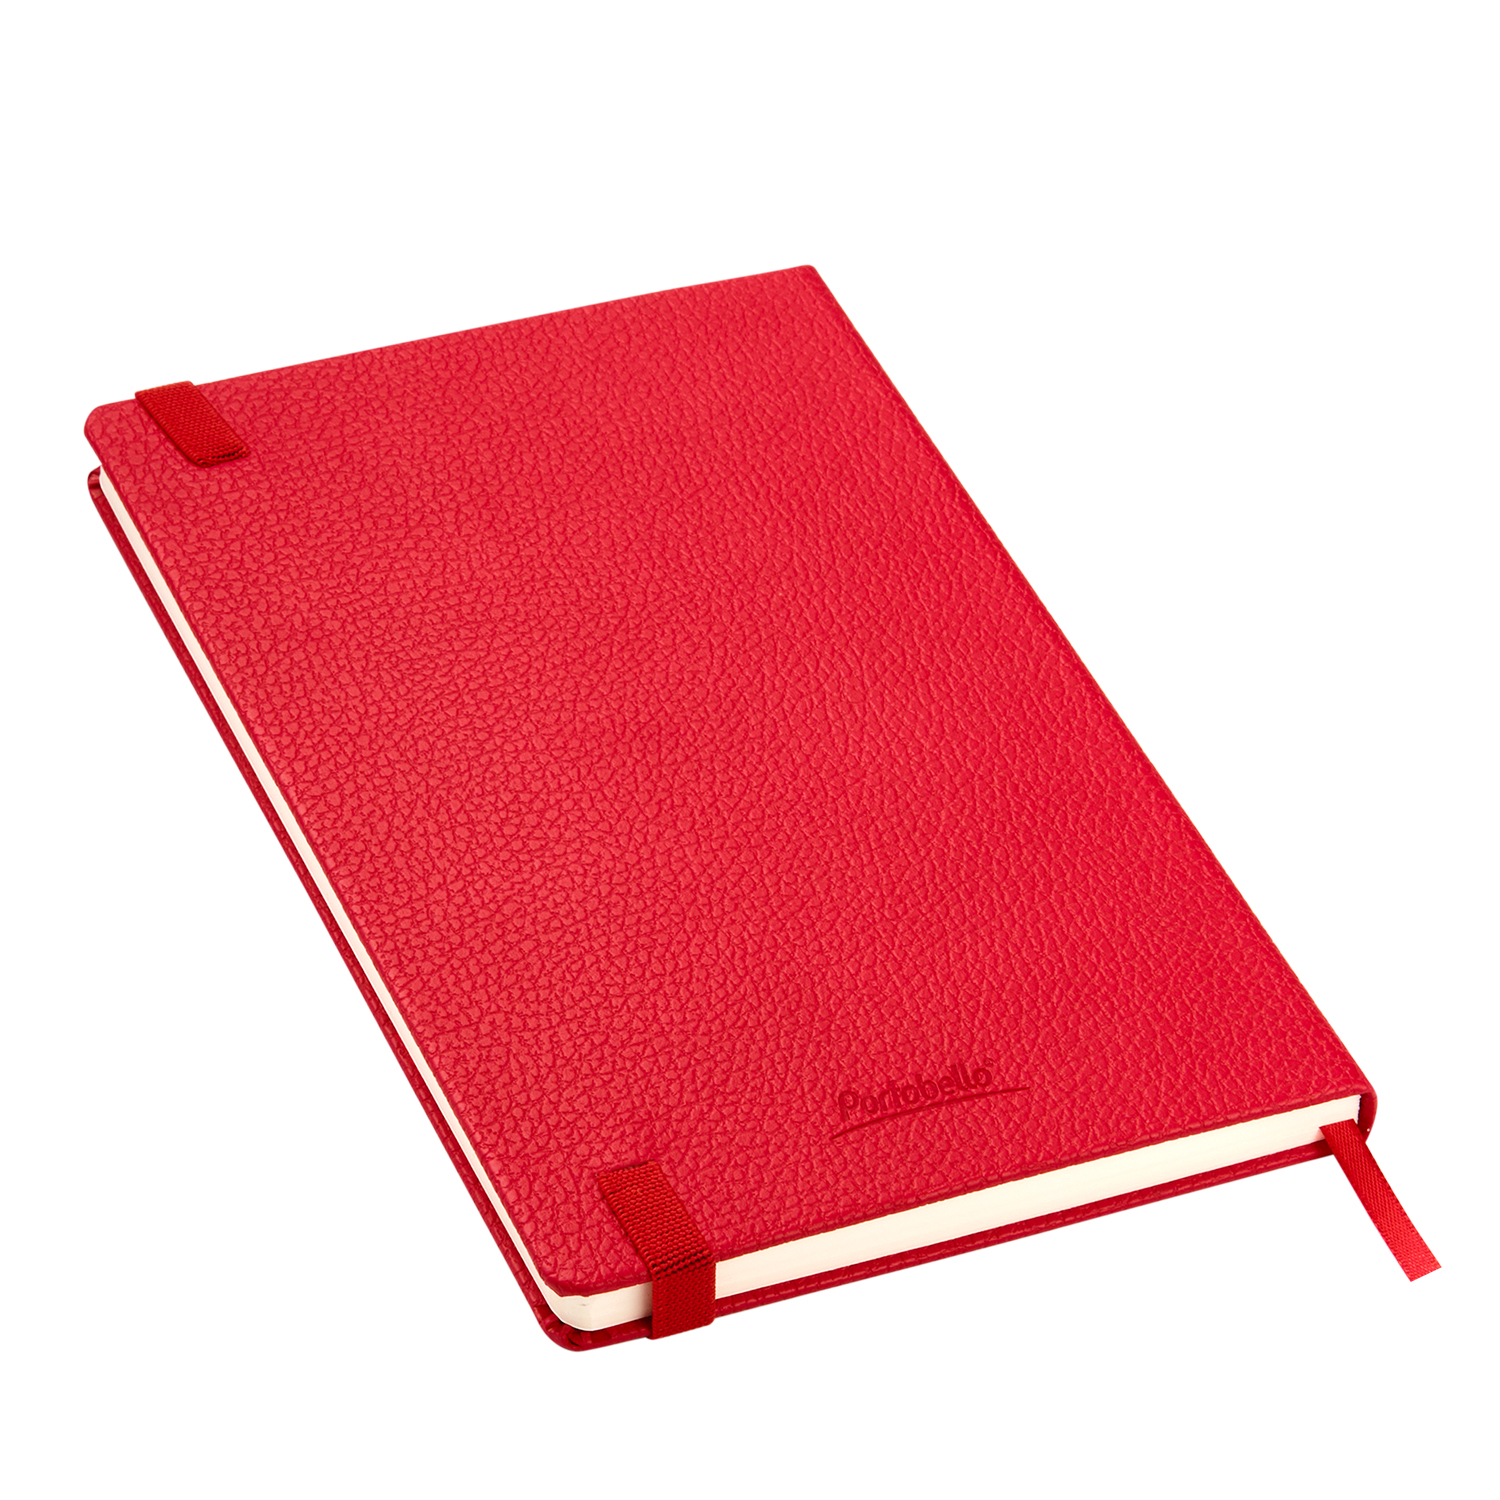 Ежедневник недатированный Dallas Btobook, красный (без упаковки, без стикера)